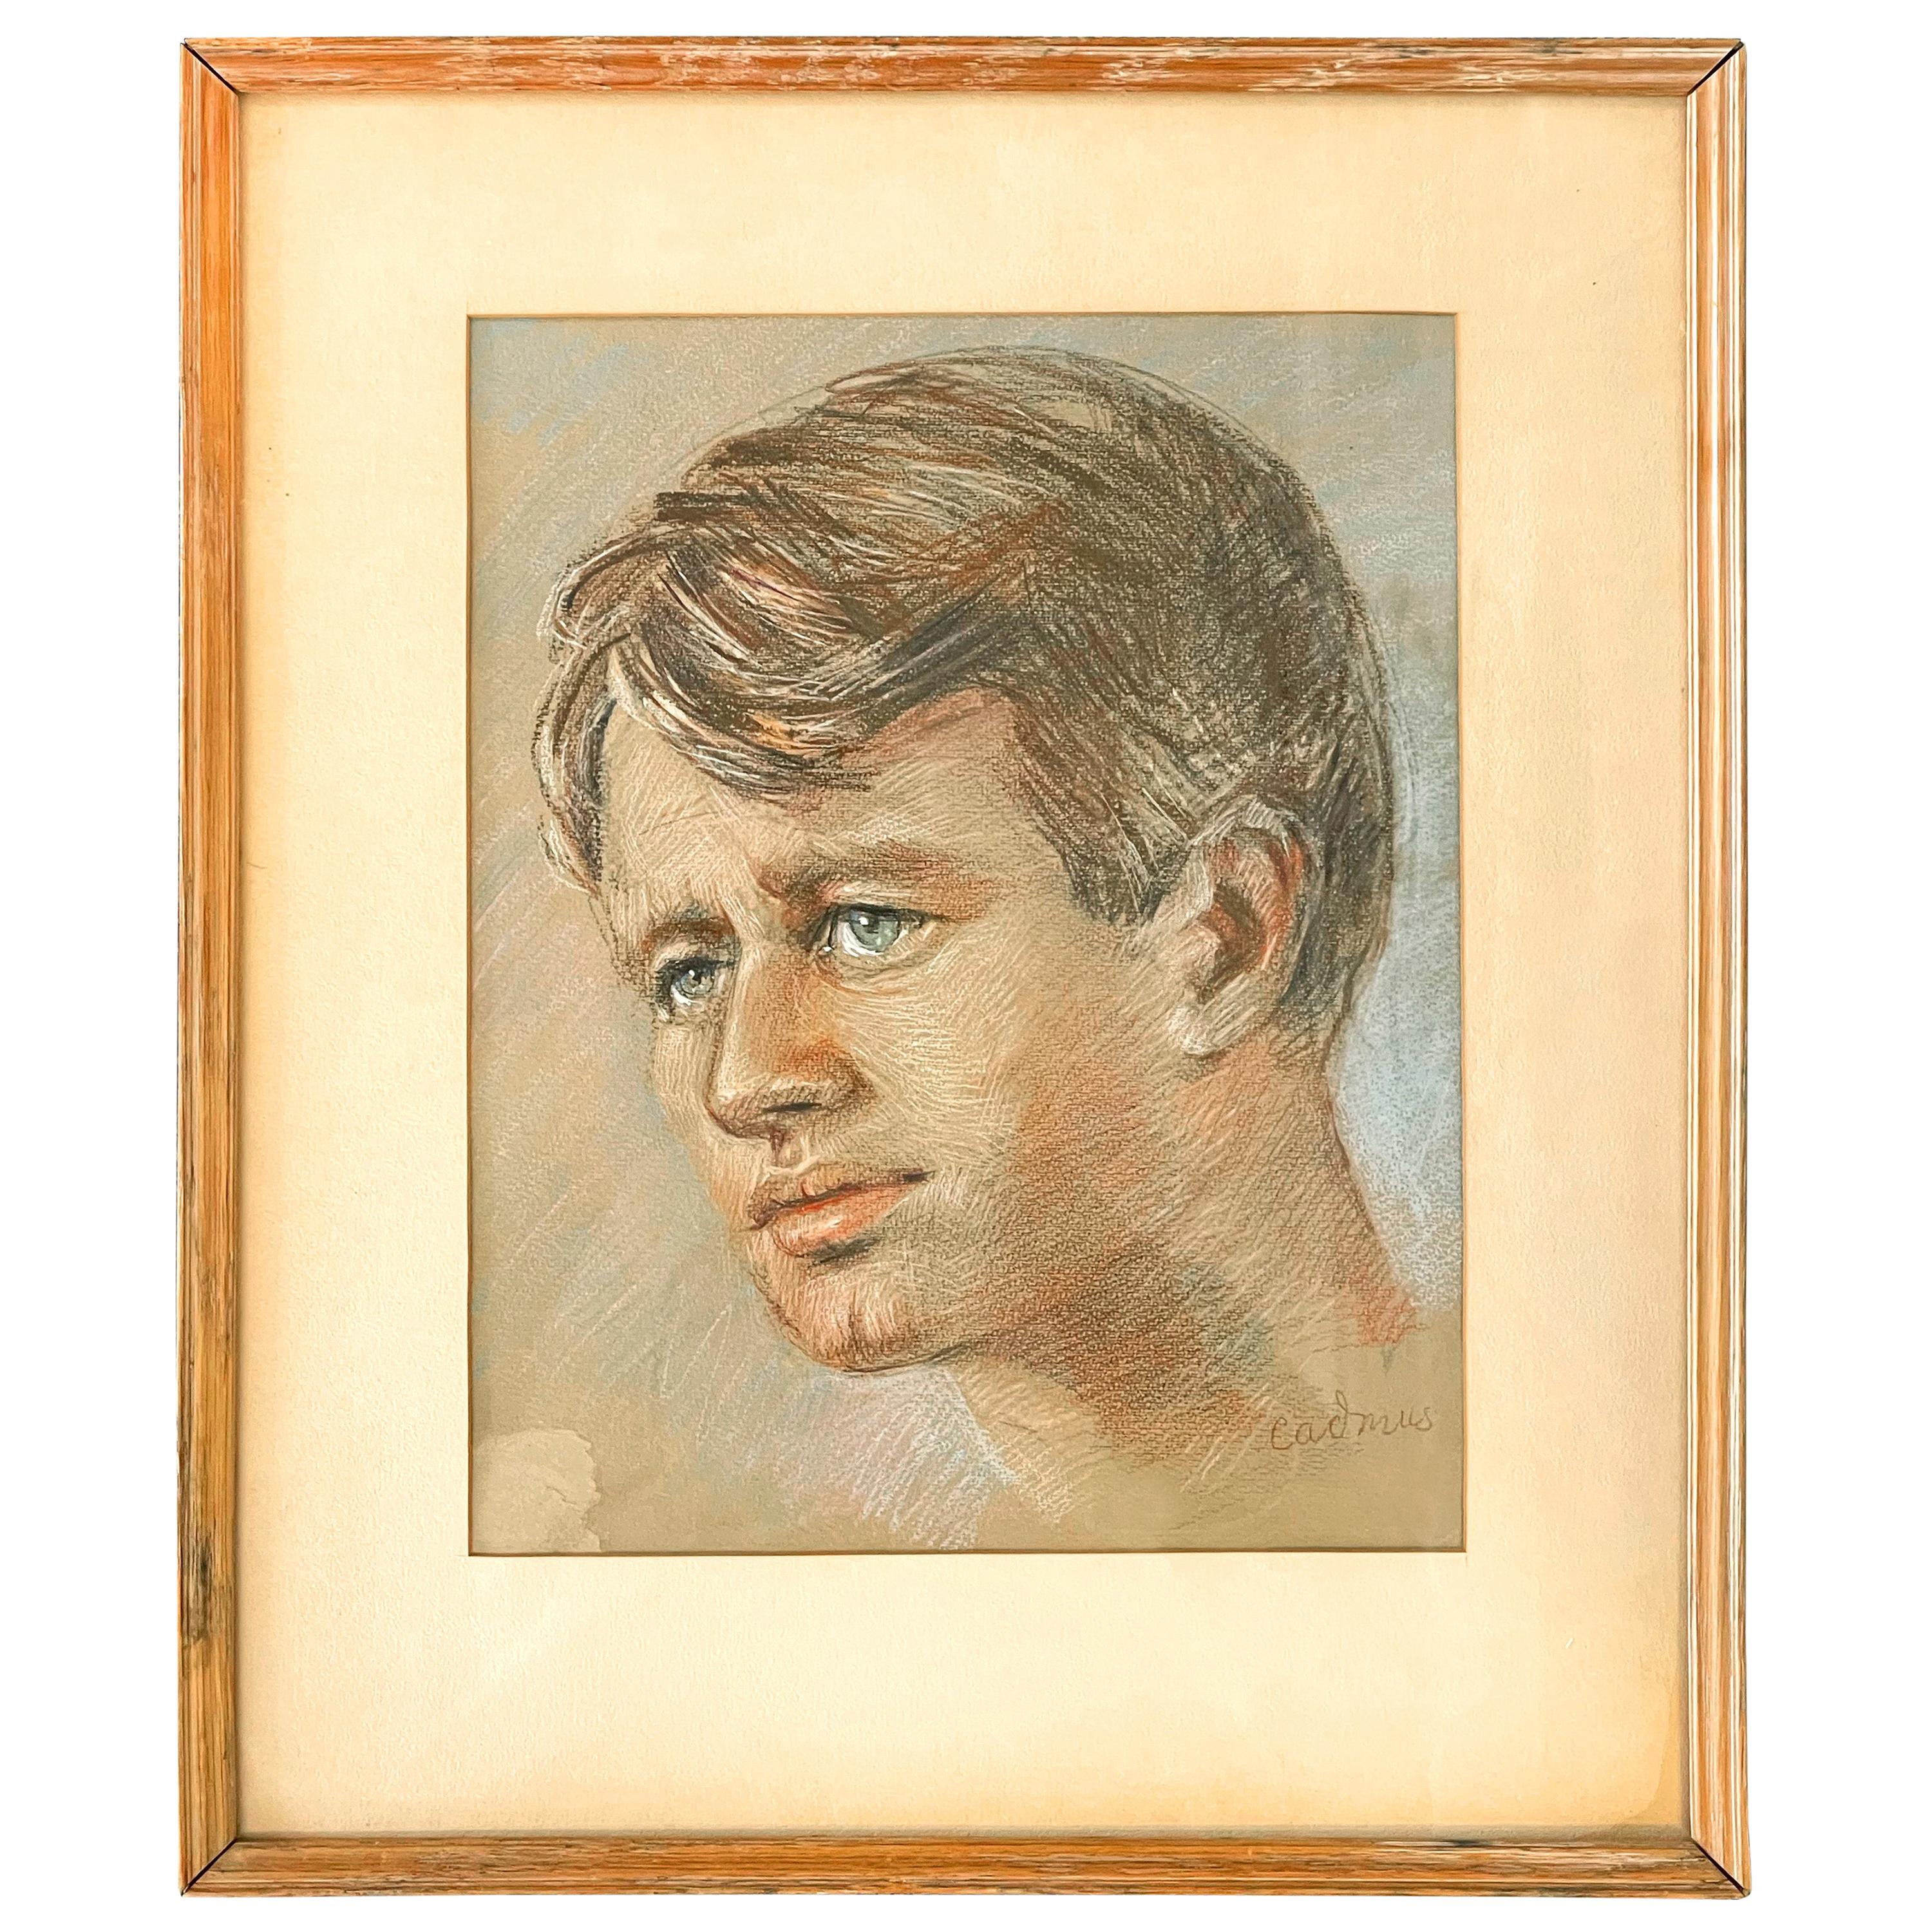 ""Man mit blauen Augen"" Porträt von Paul Cadmus, möglicherweise von Robert F. Kennedy